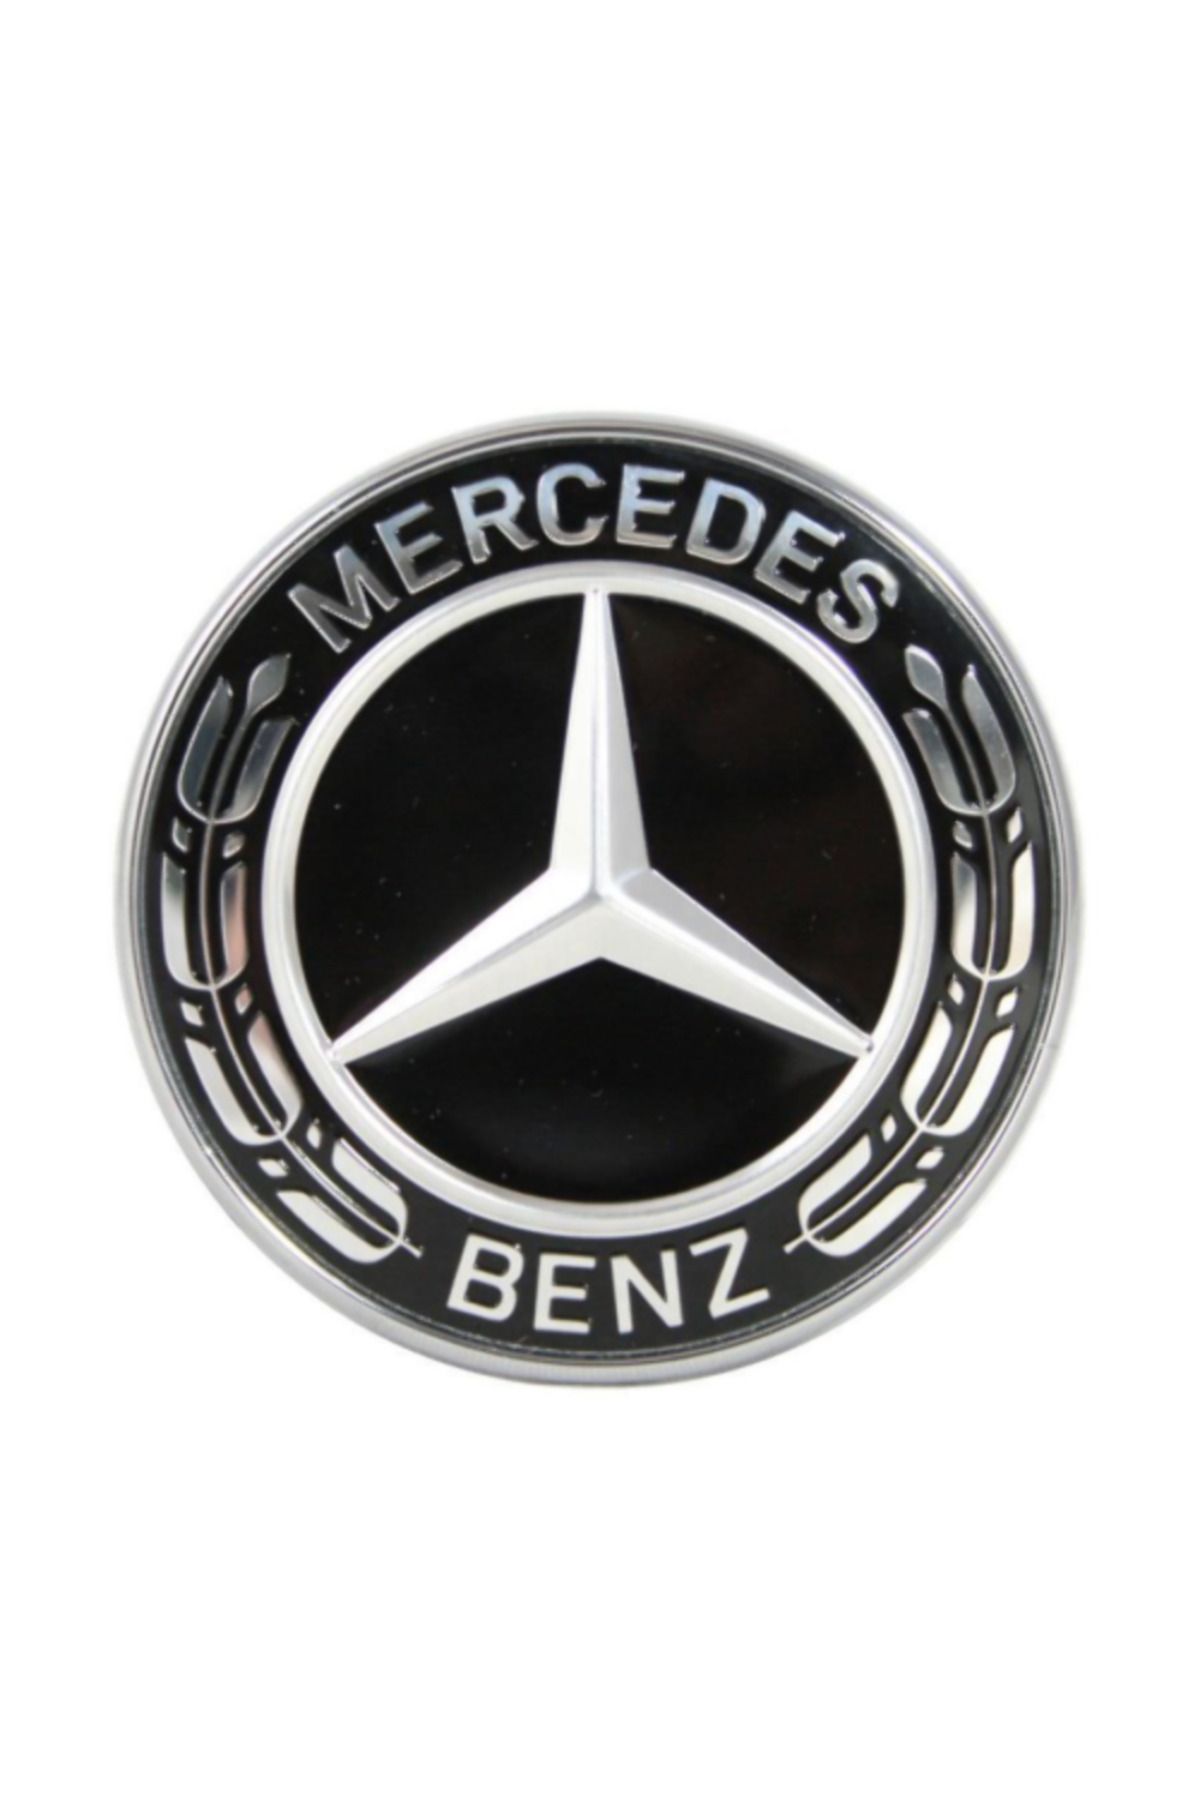 Mercedes 0008171801 - A0008171801 ORJ. MERCEDES KAPUT YILDIZI S SERİSİ S65 SLC43 AMG